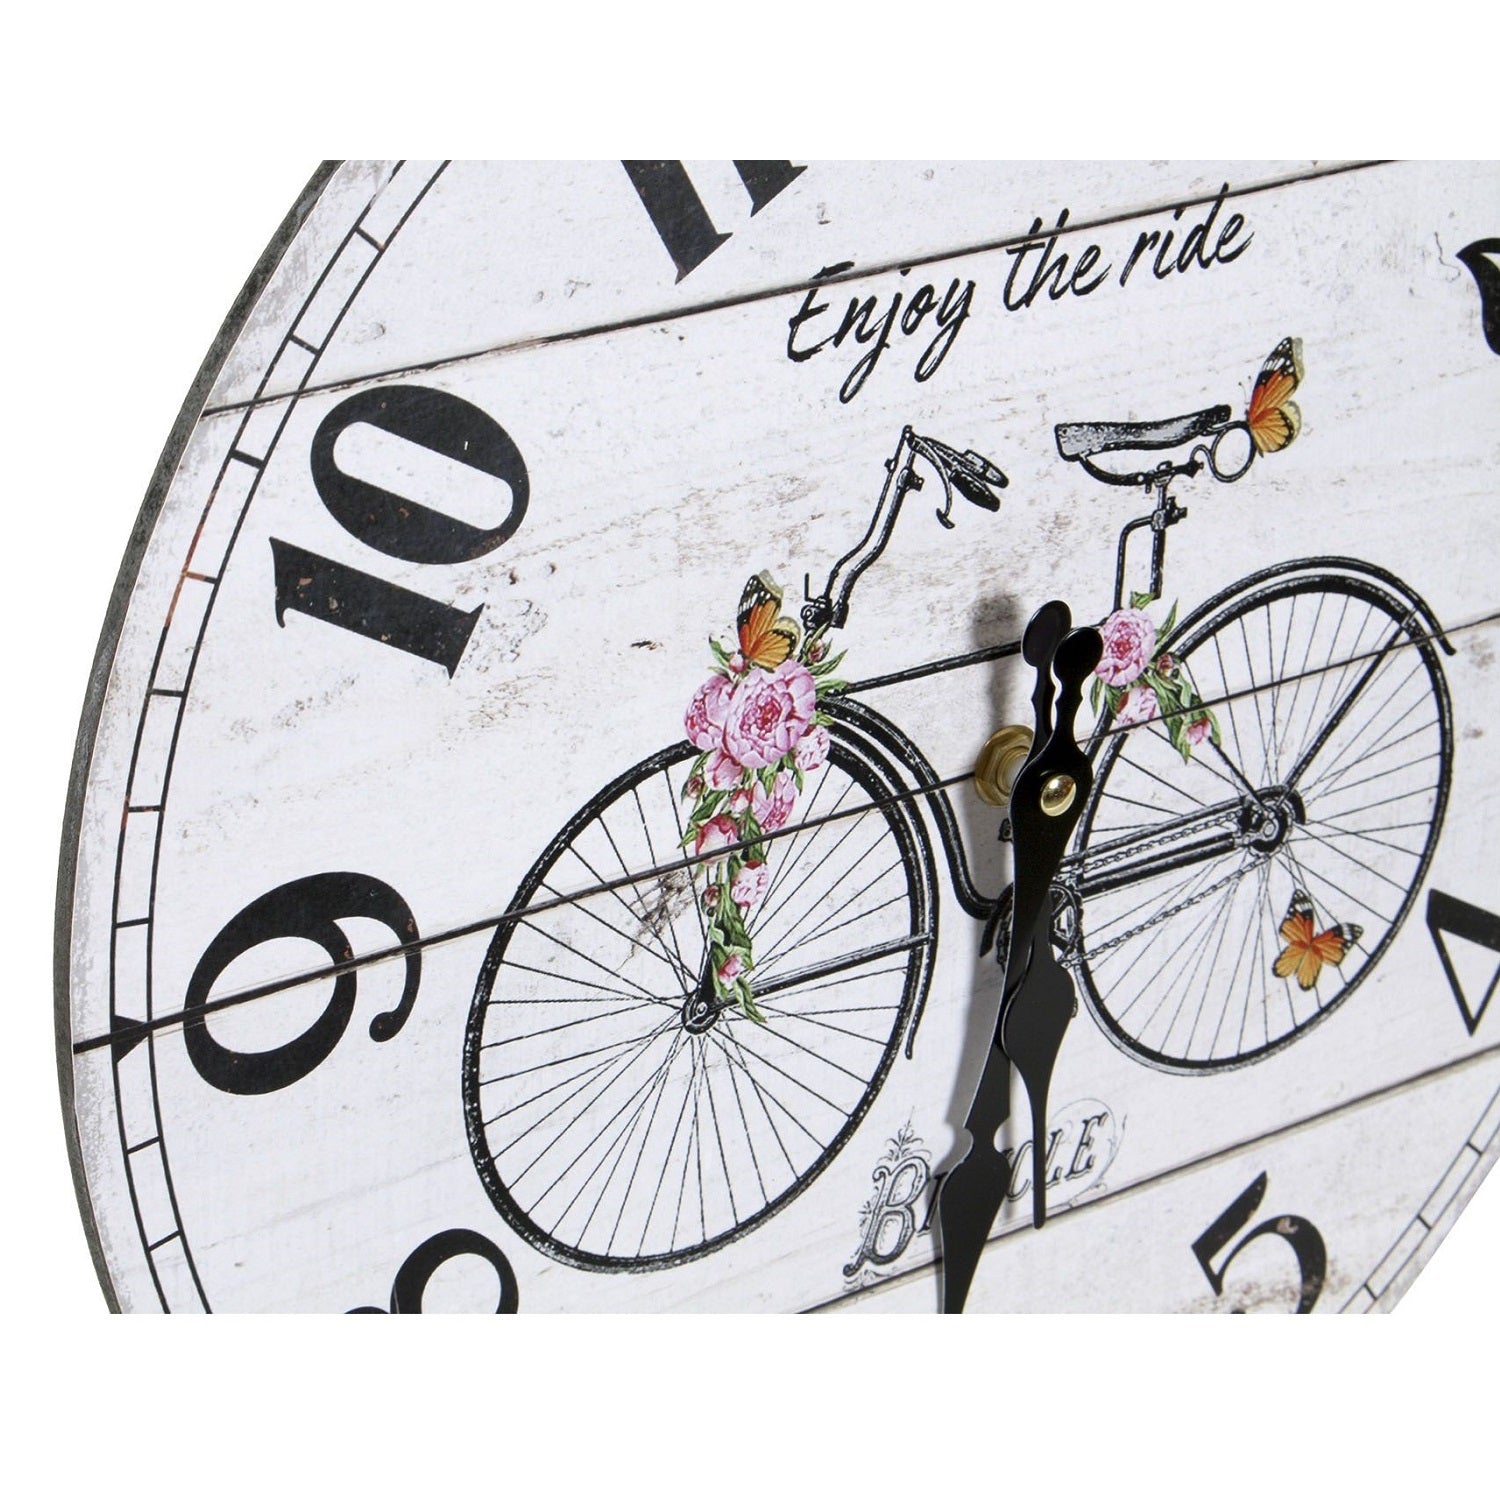 Reloj Bicycle Vintage